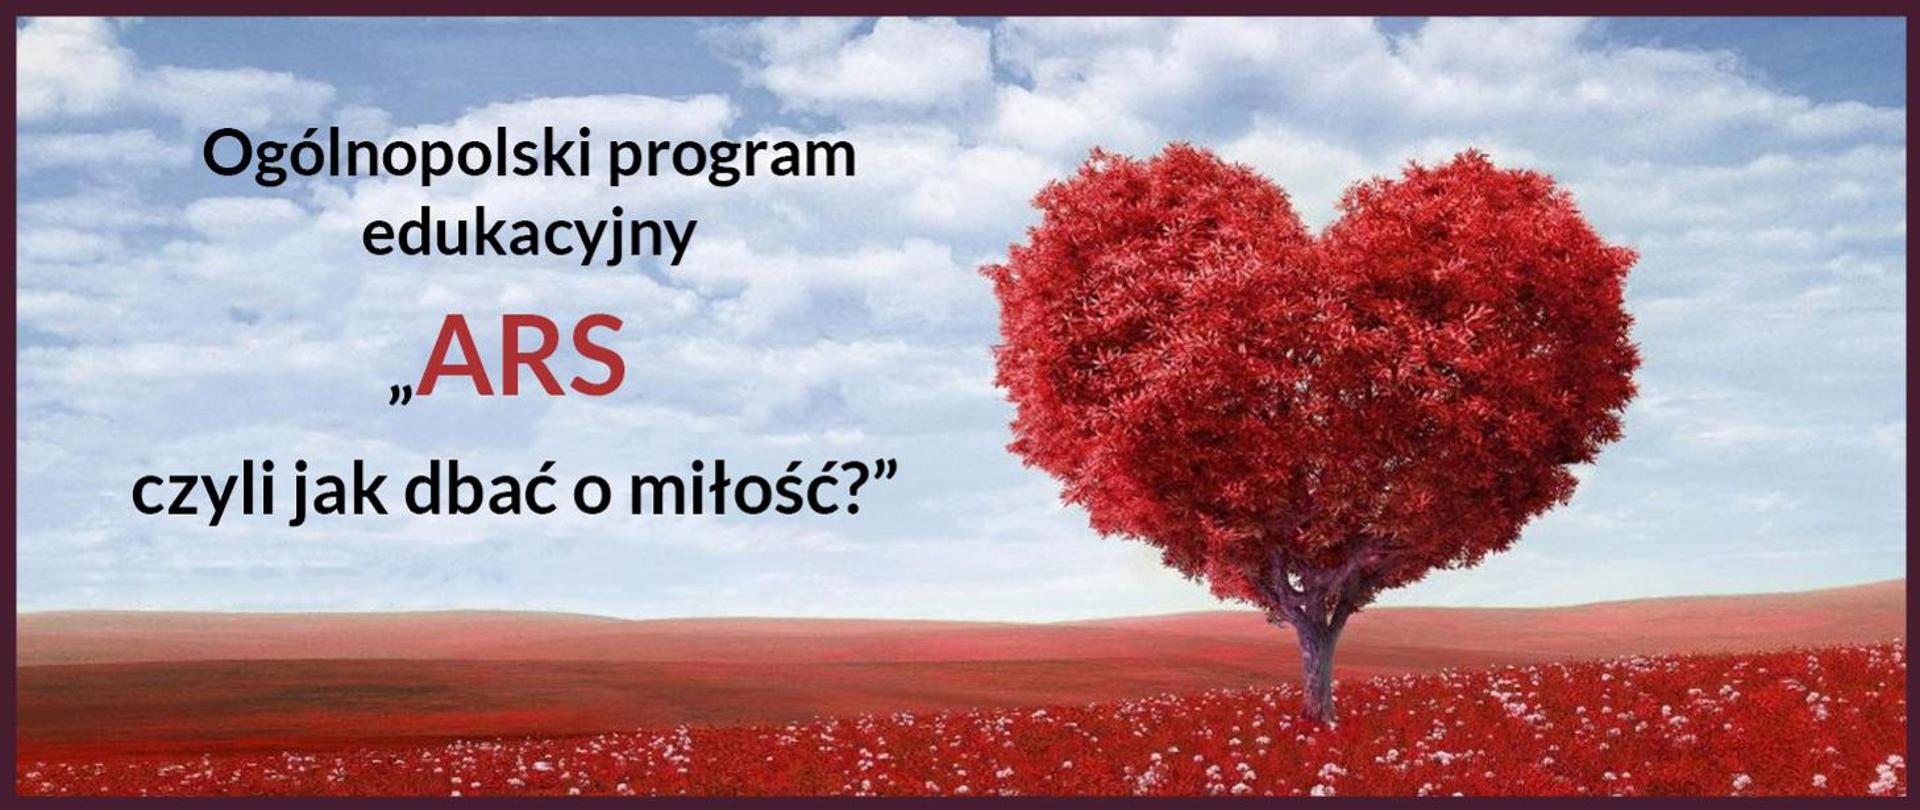 baner ogólnopolski program edukacyjny, ARS, jak dbać o miłość? w tle czerwone drzewo w kształcie serca